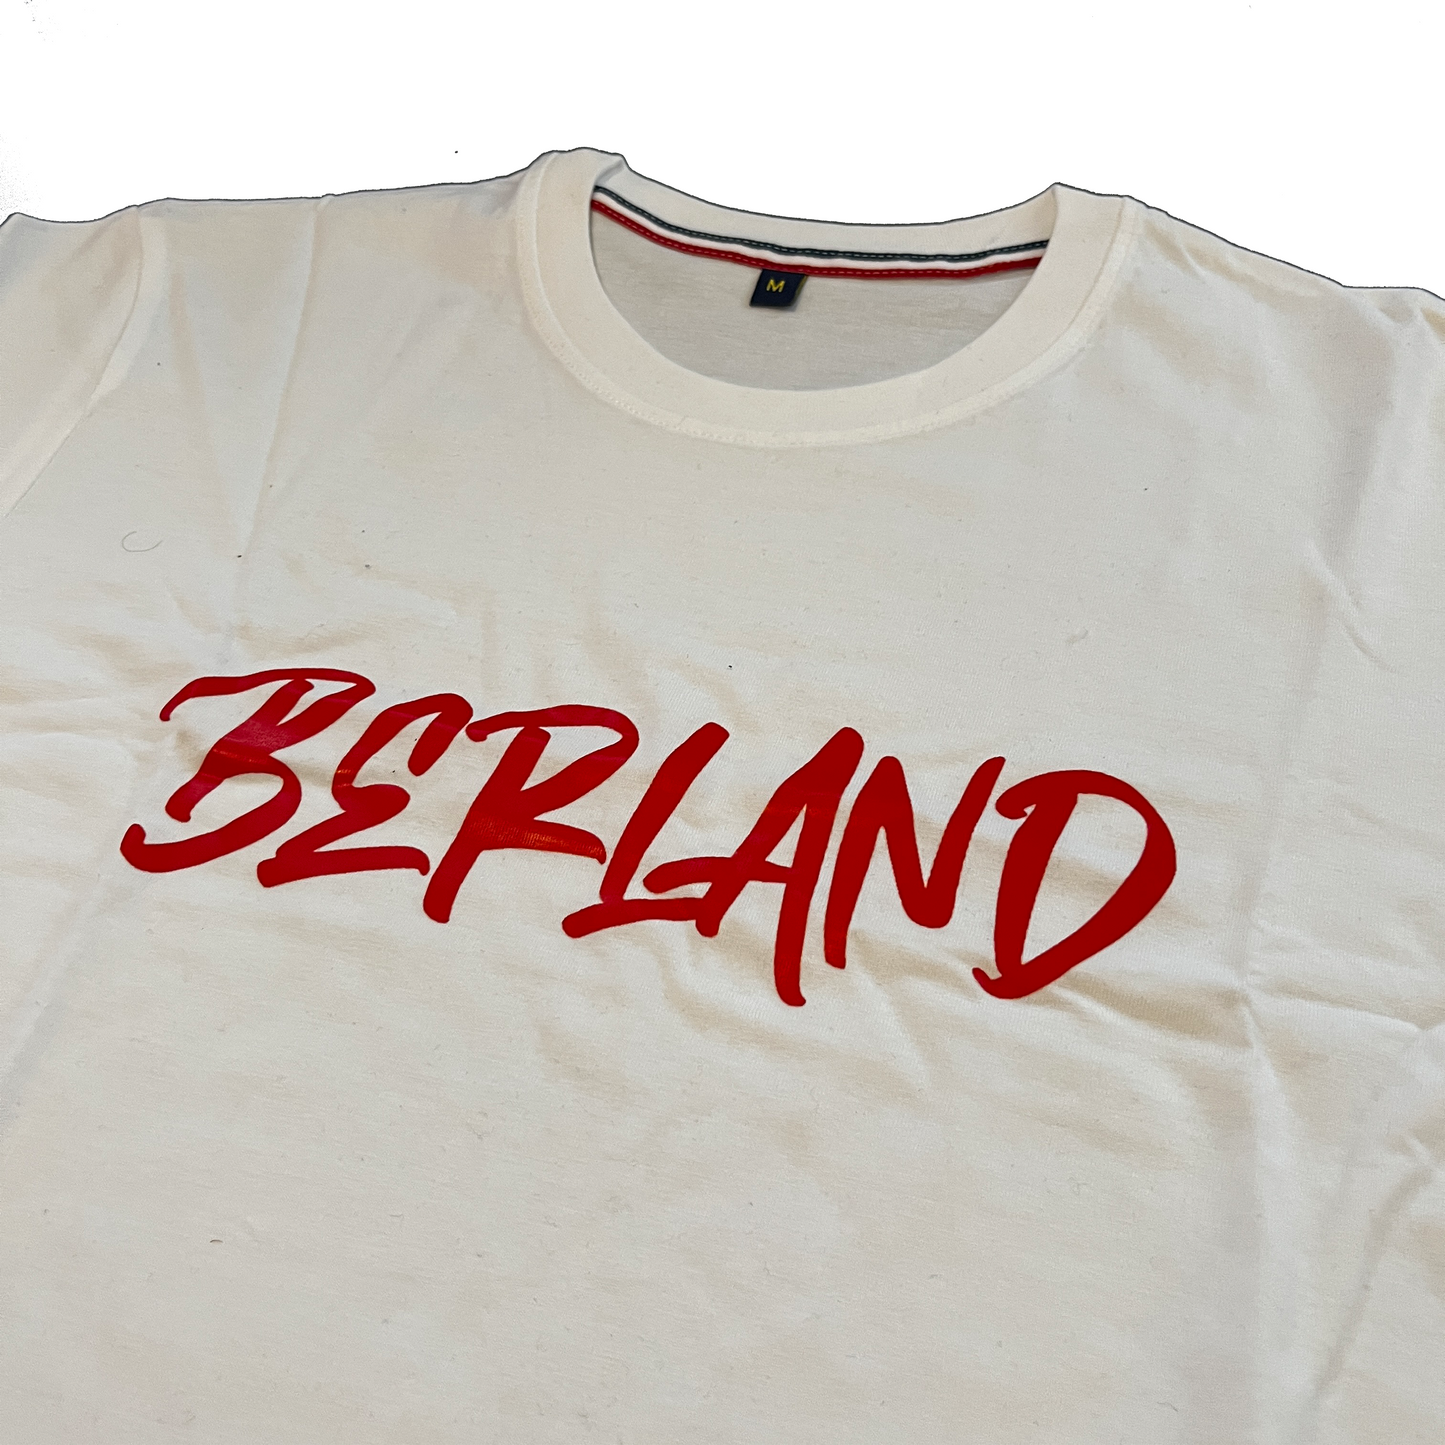 White Berland Print T-Shirt